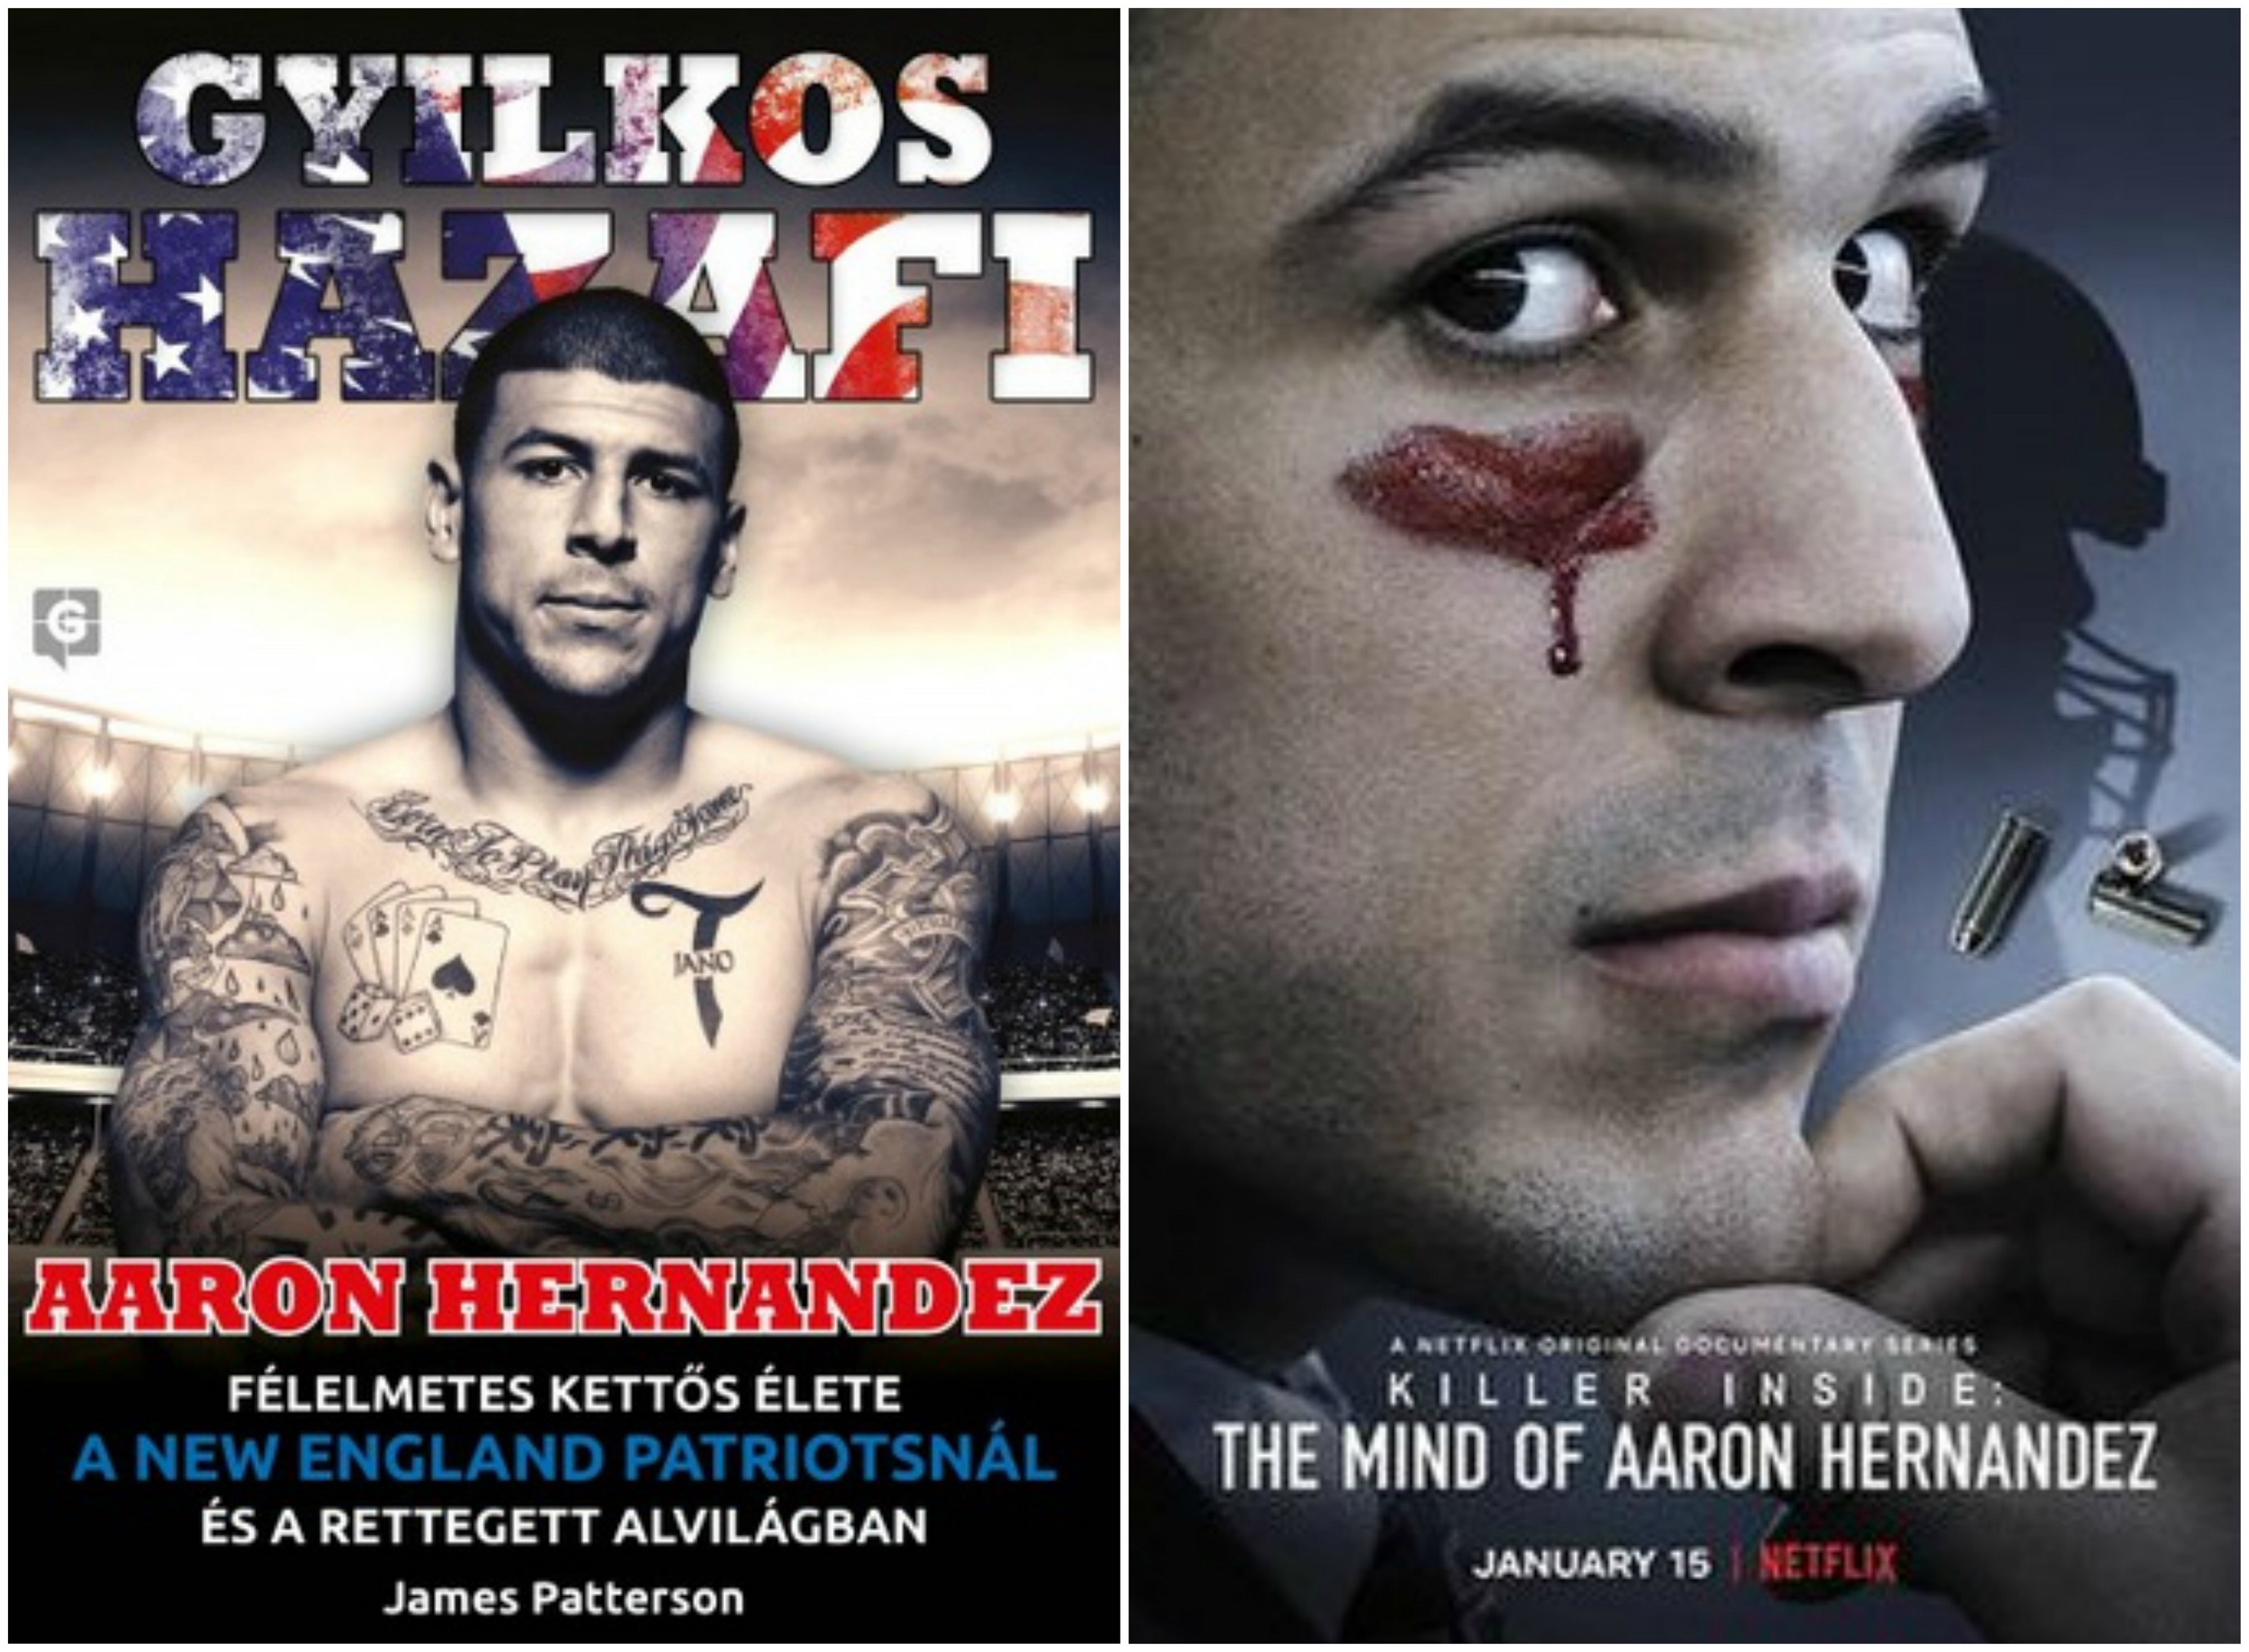 Gyilkos hazafi : Aaron Hernandez félelmetes kettős élete a New England Patriotsnál és a rettegett alvilágban